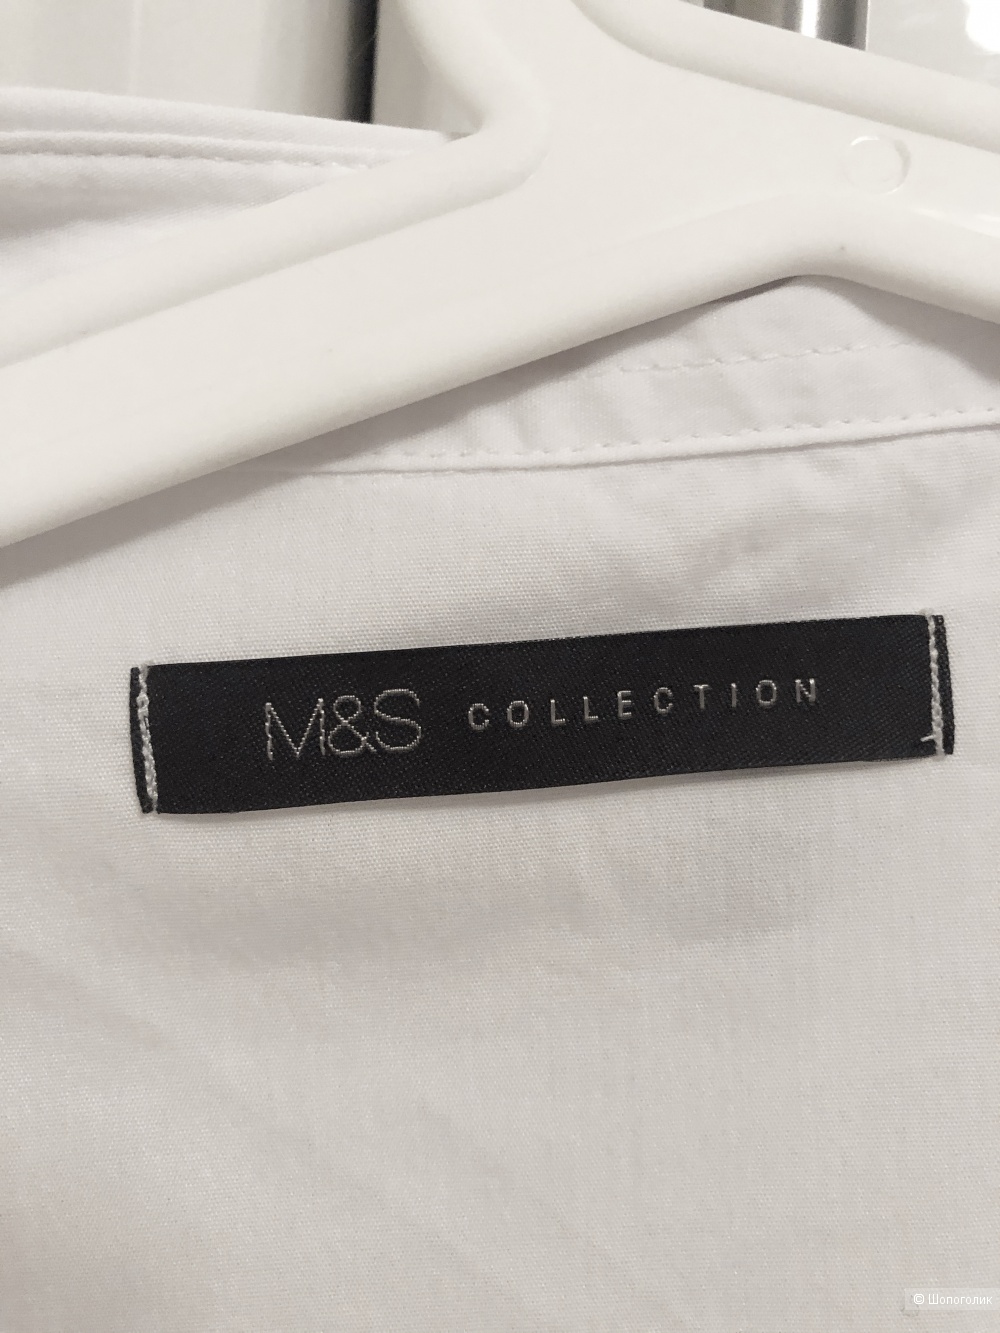 Сет из трёх рубашек M&S, 50-52 размер